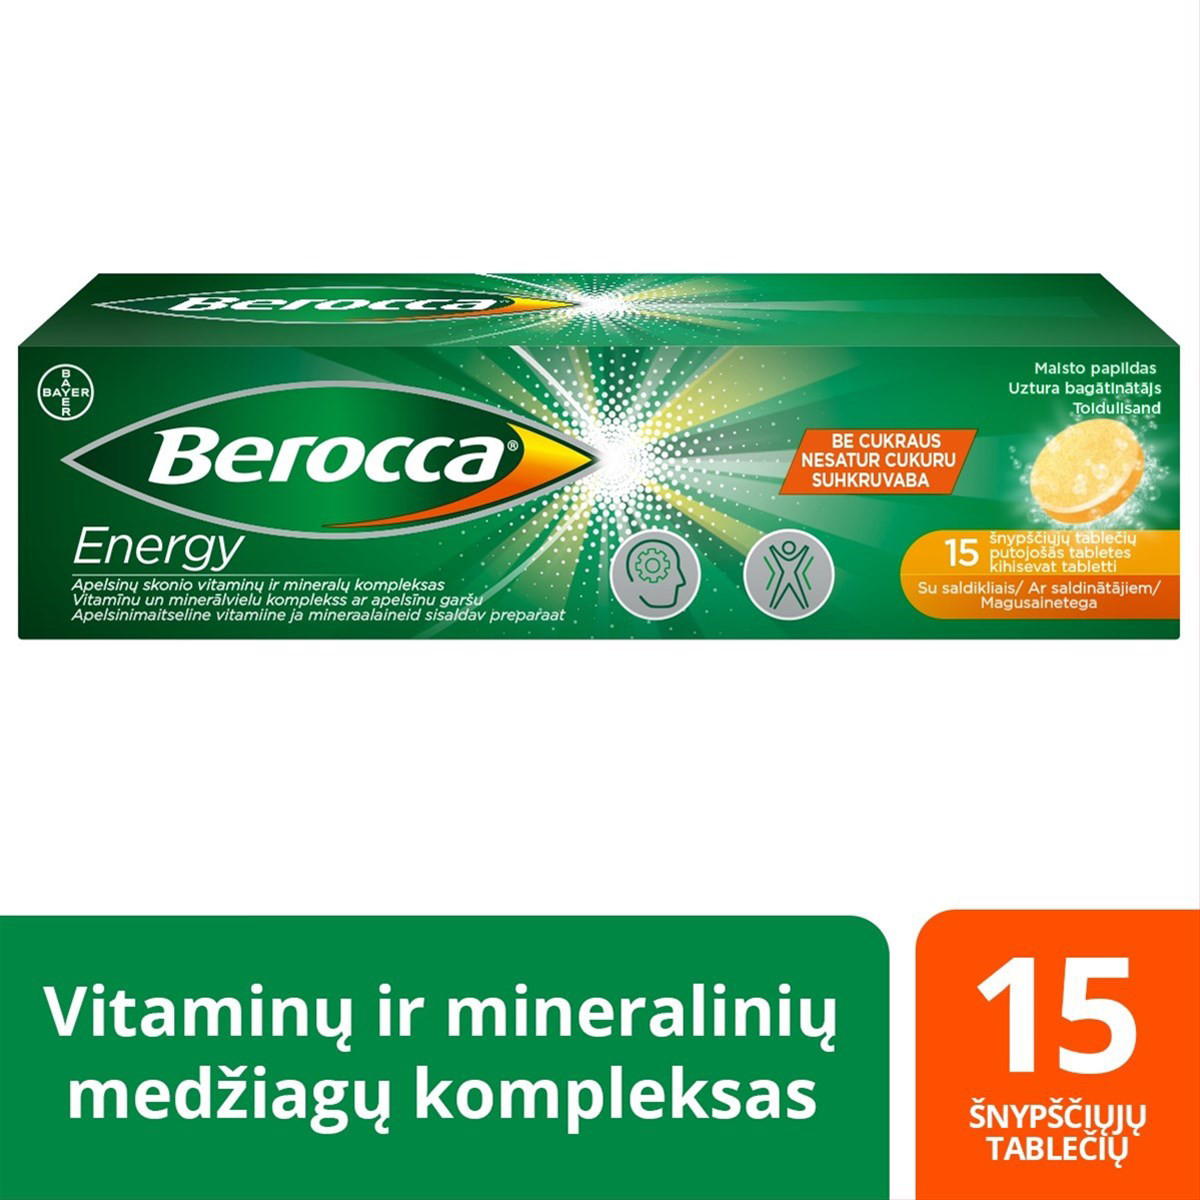 BEROCCA ENERGY, 15 šnypščiųjų tablečių